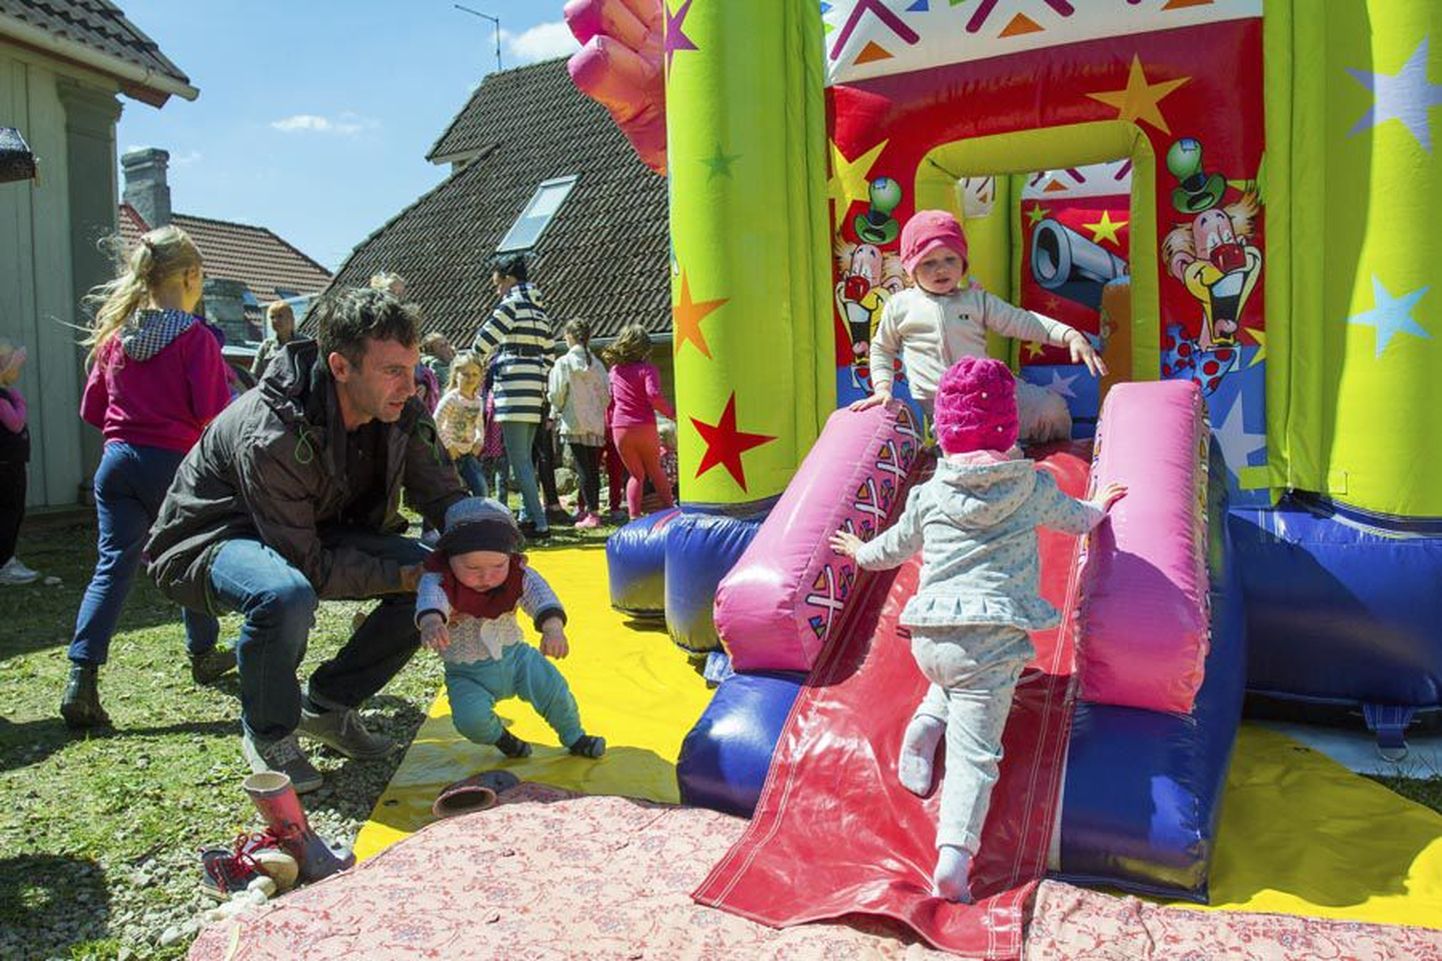 Lastekaitsepäeva üritusel Viljandis osales nii sülelapsi kui suuremaid rüblikuid, kes tundsid end batuudil nagu teises kodus.